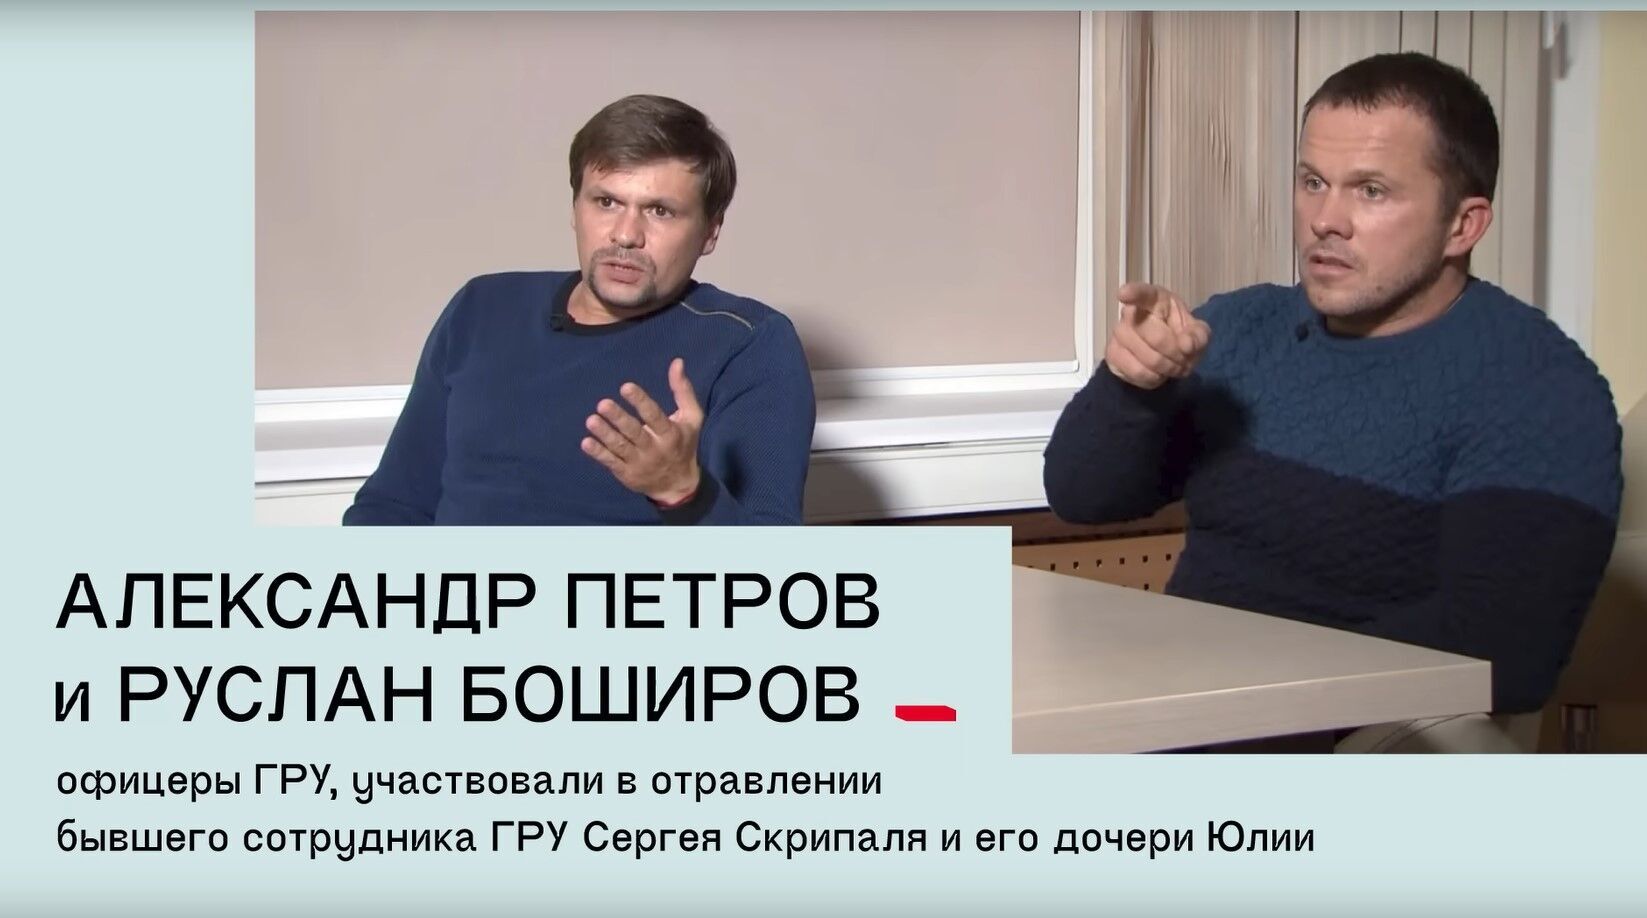 Христо Грозев заявил, что Зеленского пытался убить элитный спецназ РФ: выяснился любопытный факт